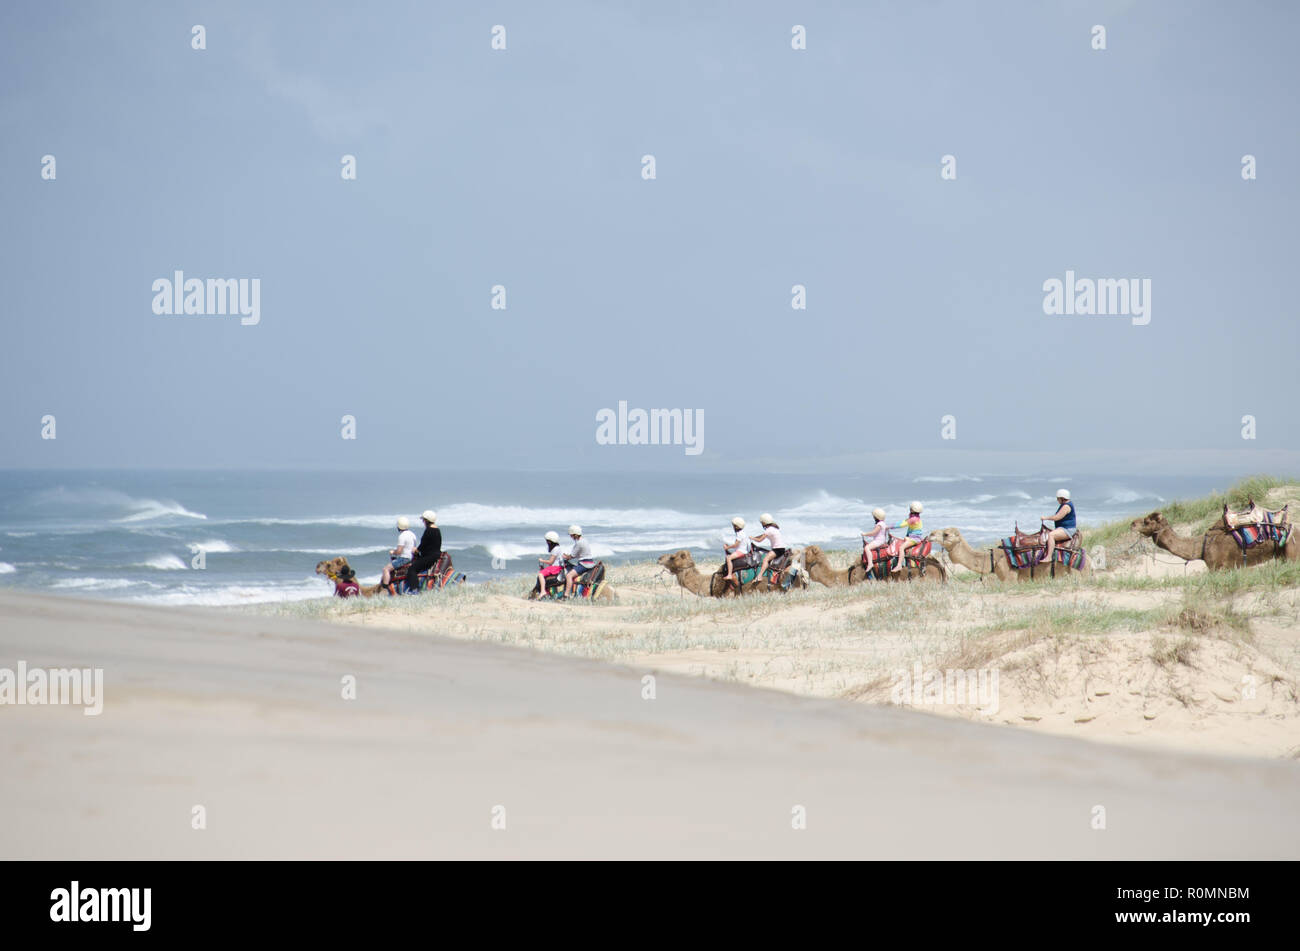 Los jinetes de camellos abandonar las estériles dunas de arena de la playa del borde del agua durante un paseo en camello para turistas en Stockton Beach dunas de arena. Foto de stock